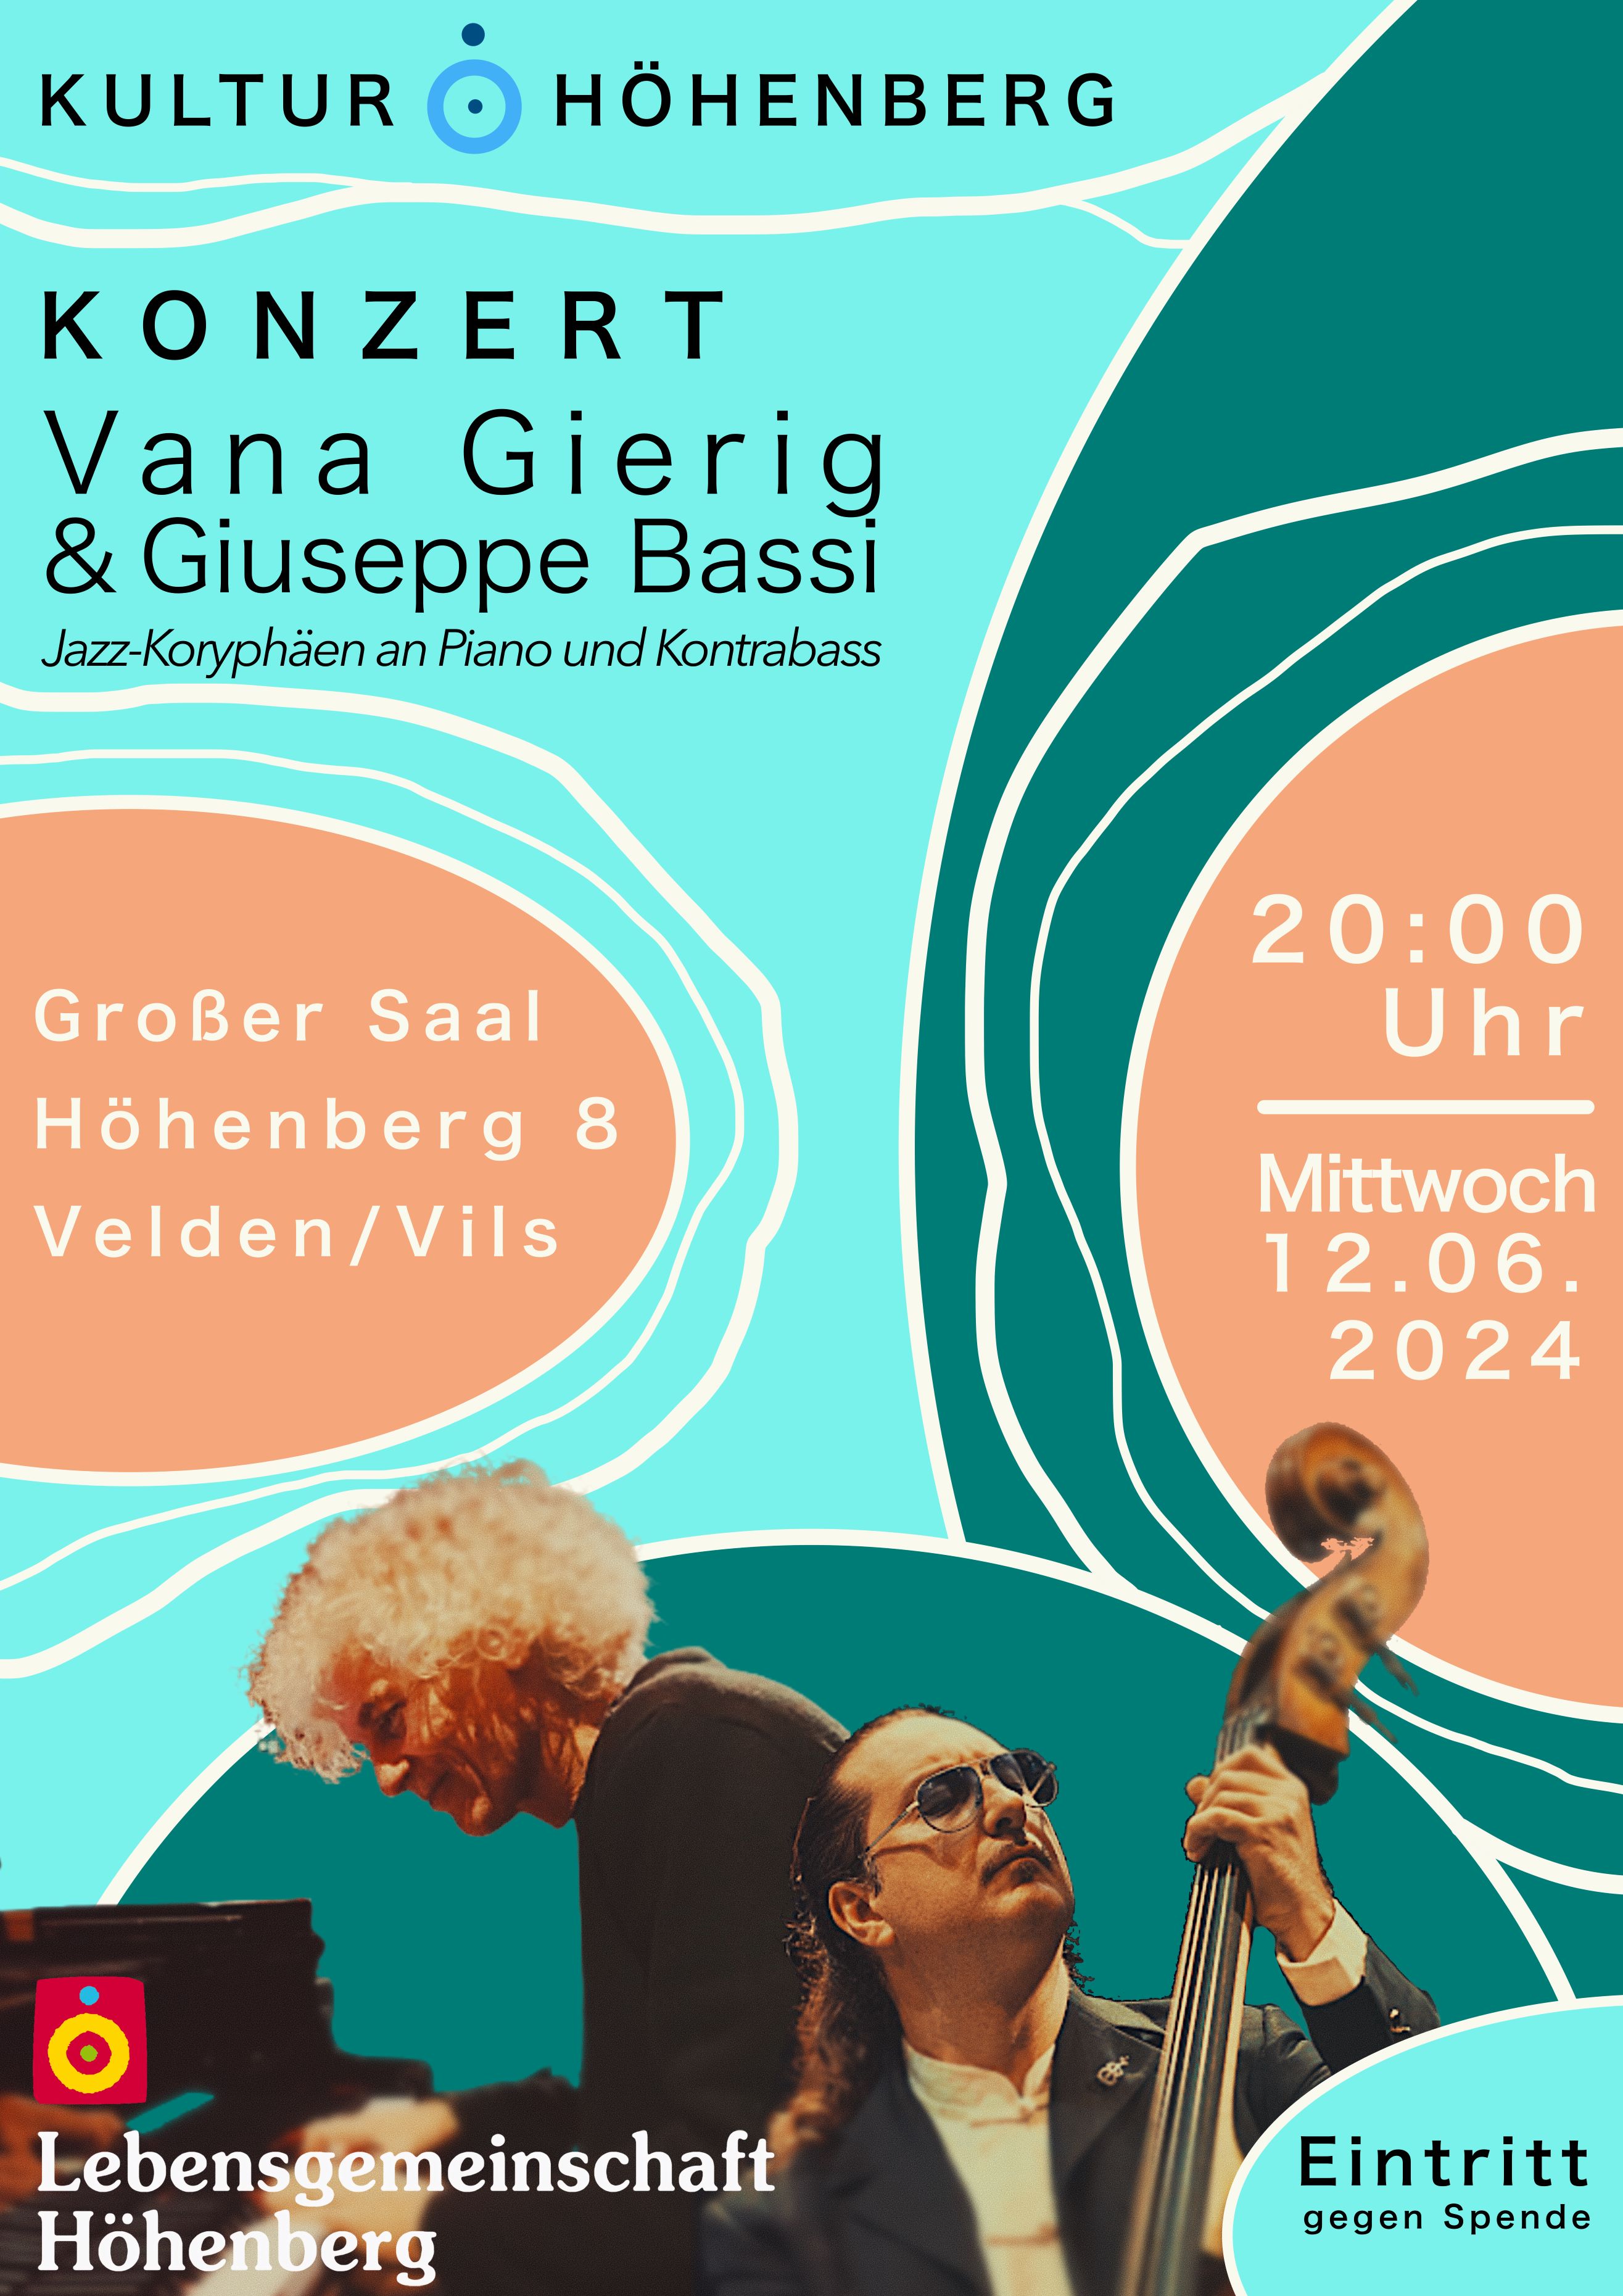 Jazz Vana Gierig&Guiseppe Bassi